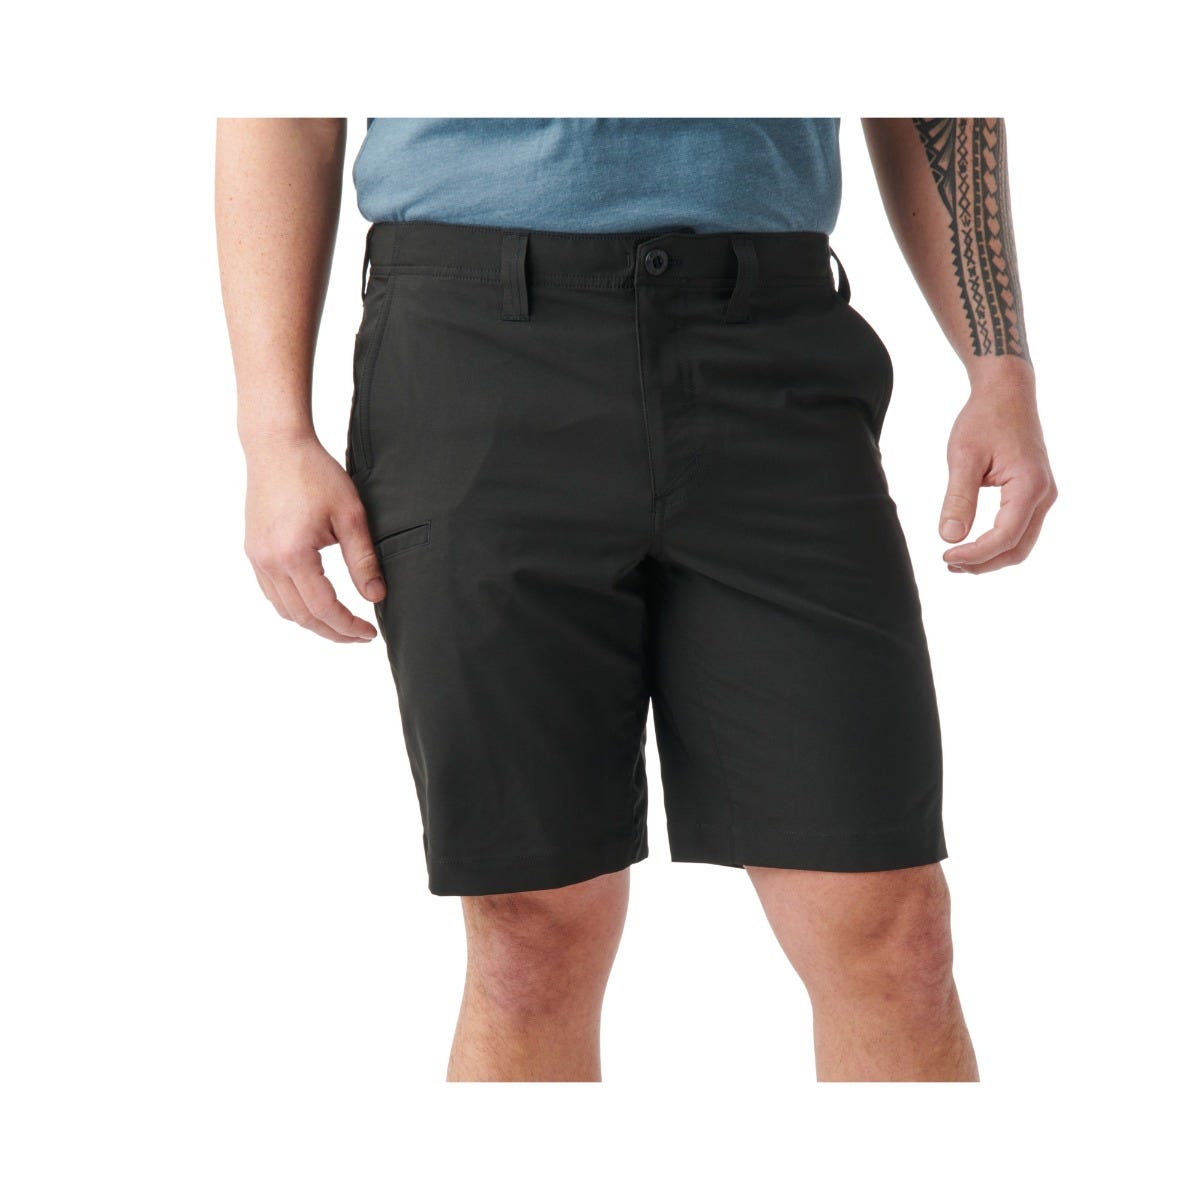 Size 32" Waist Men's 5.11 Tactical Shorts #73285 Khaki 100% Cotton 